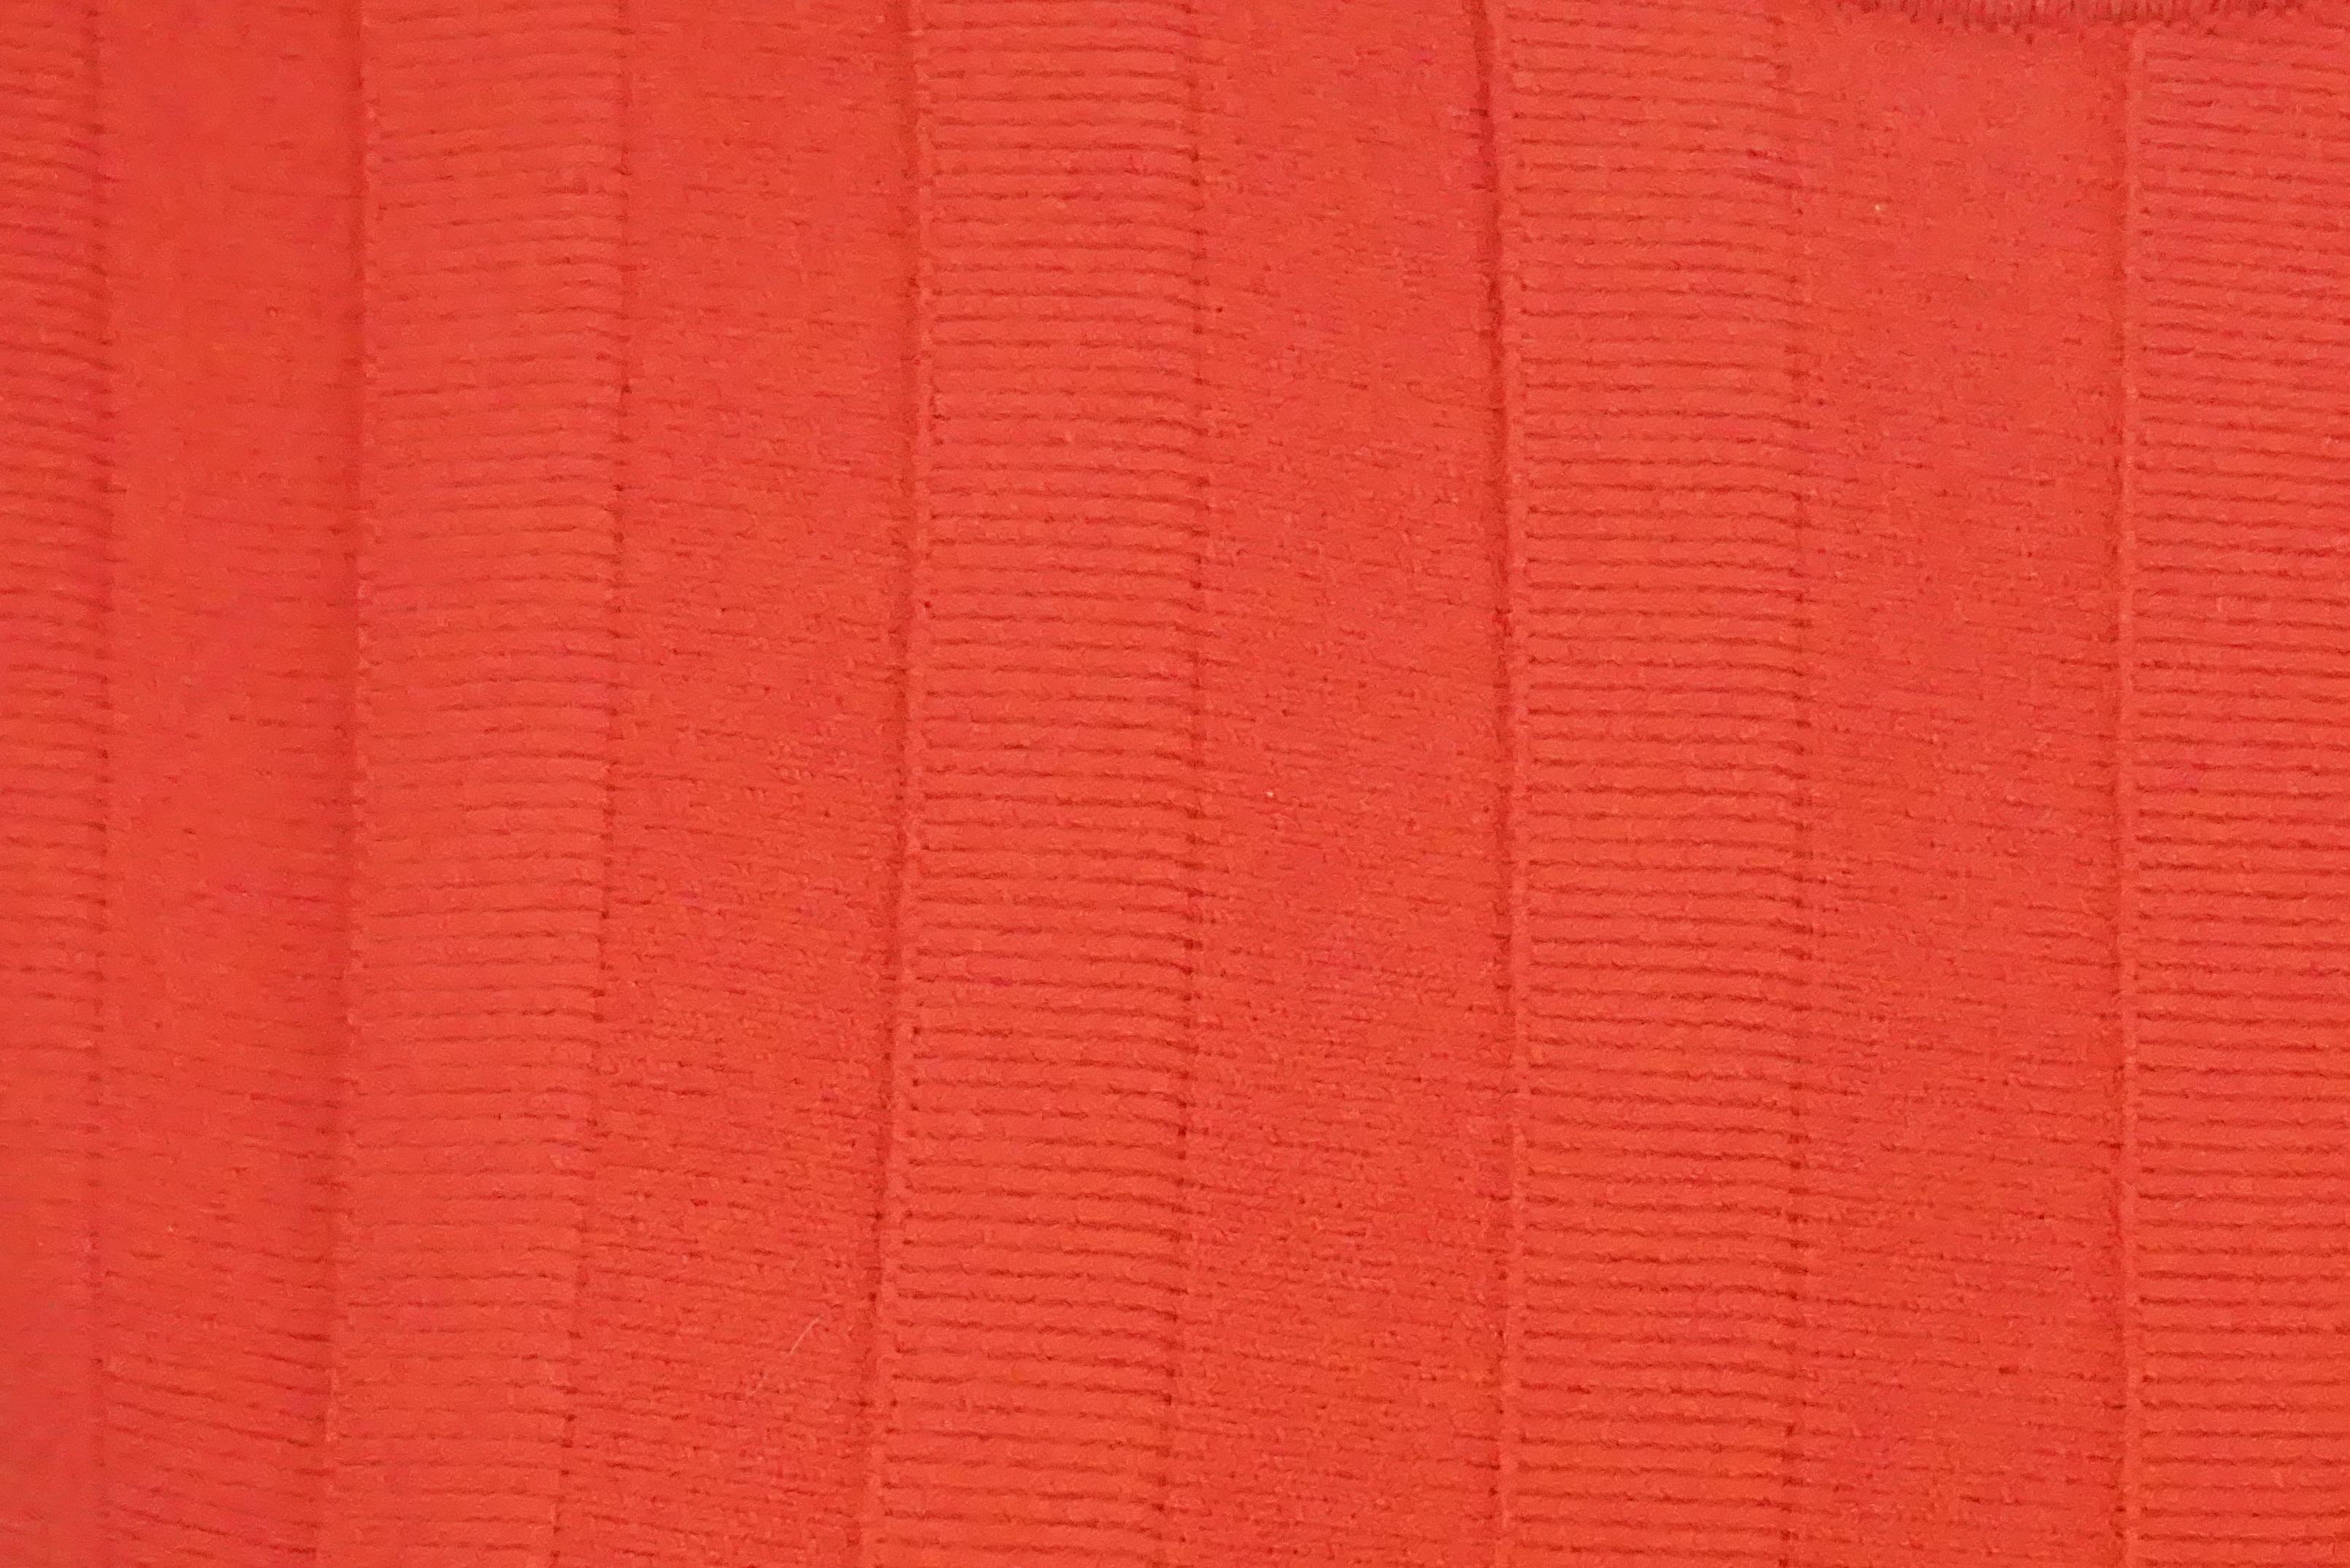 Alexander McQueen Red Knit Sleeveless Dress - Small 3